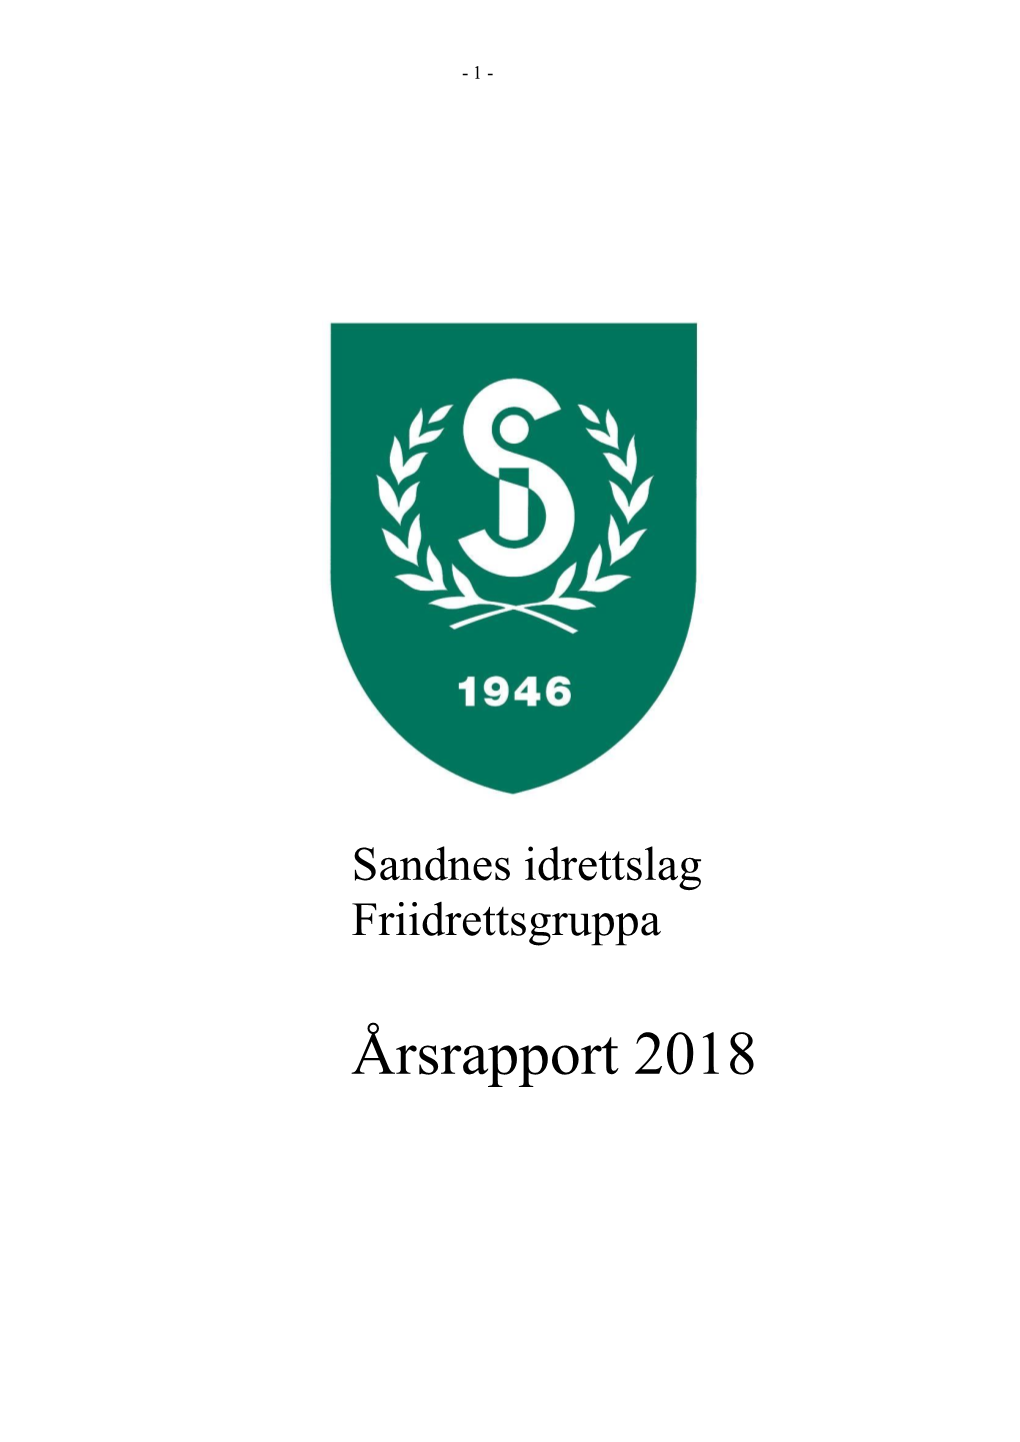 2018-Aarsrapport-SI-Friidrett Endelig